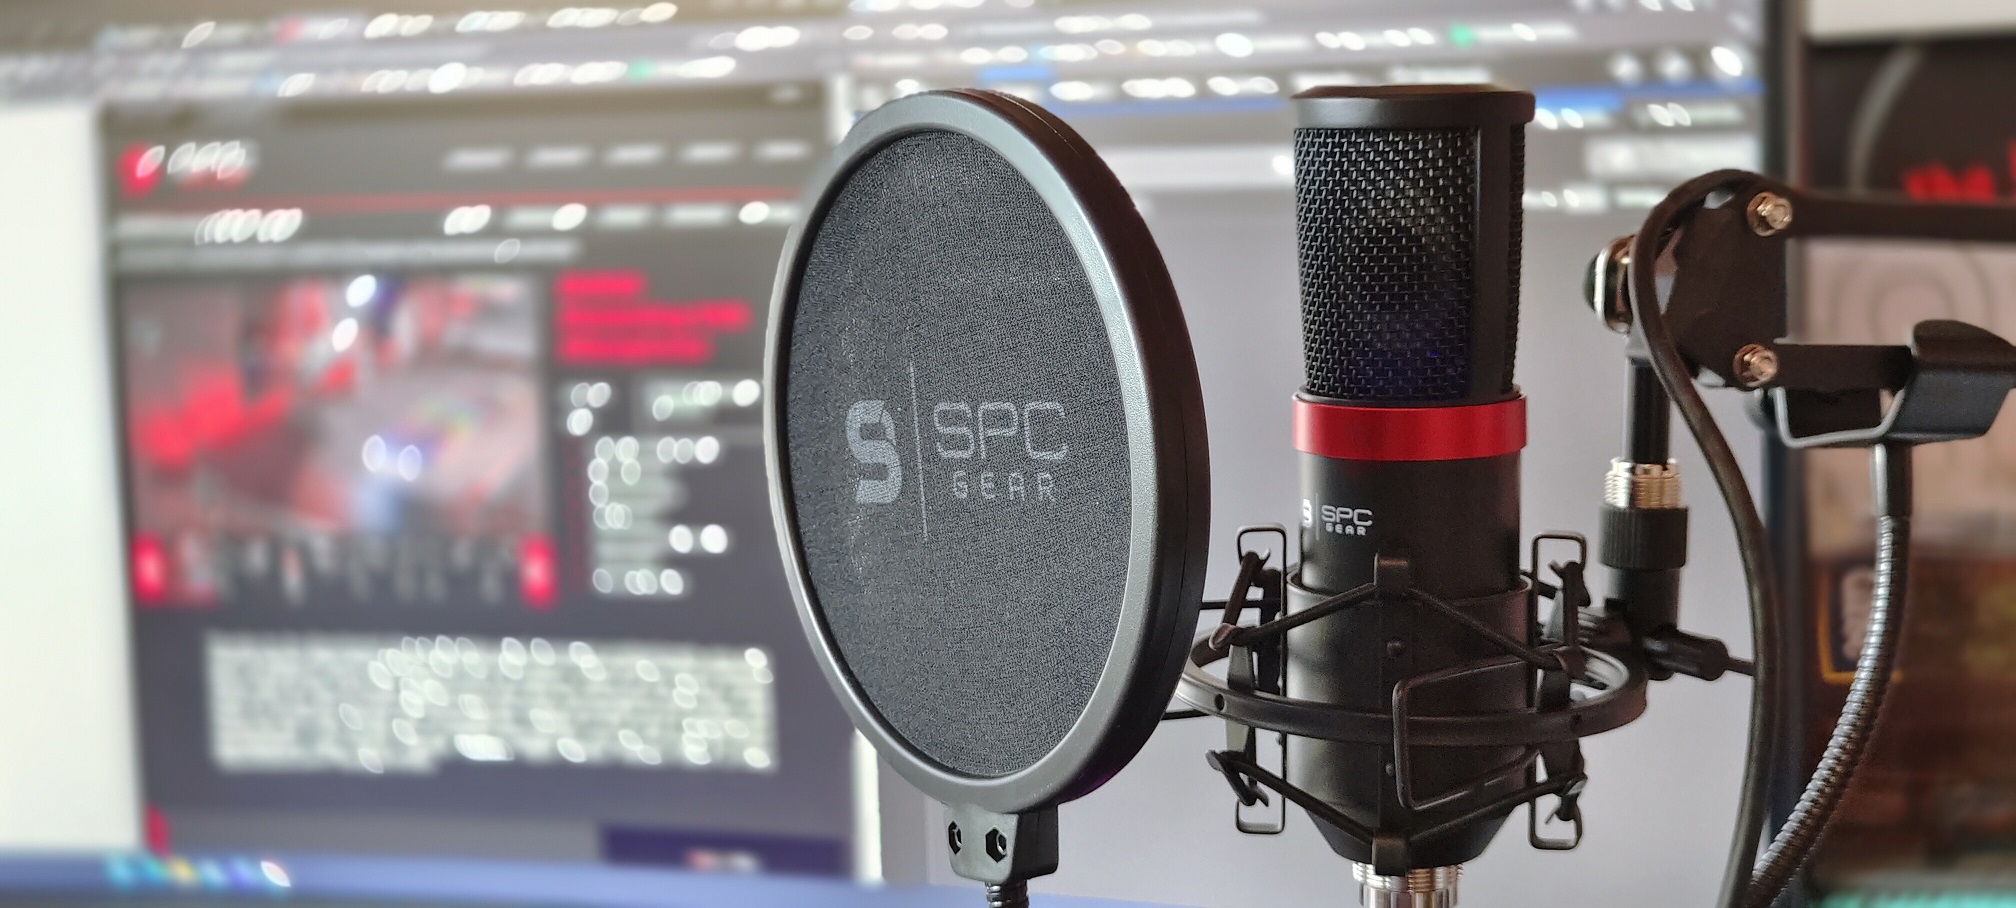 SPC Gear SM950 - recenze